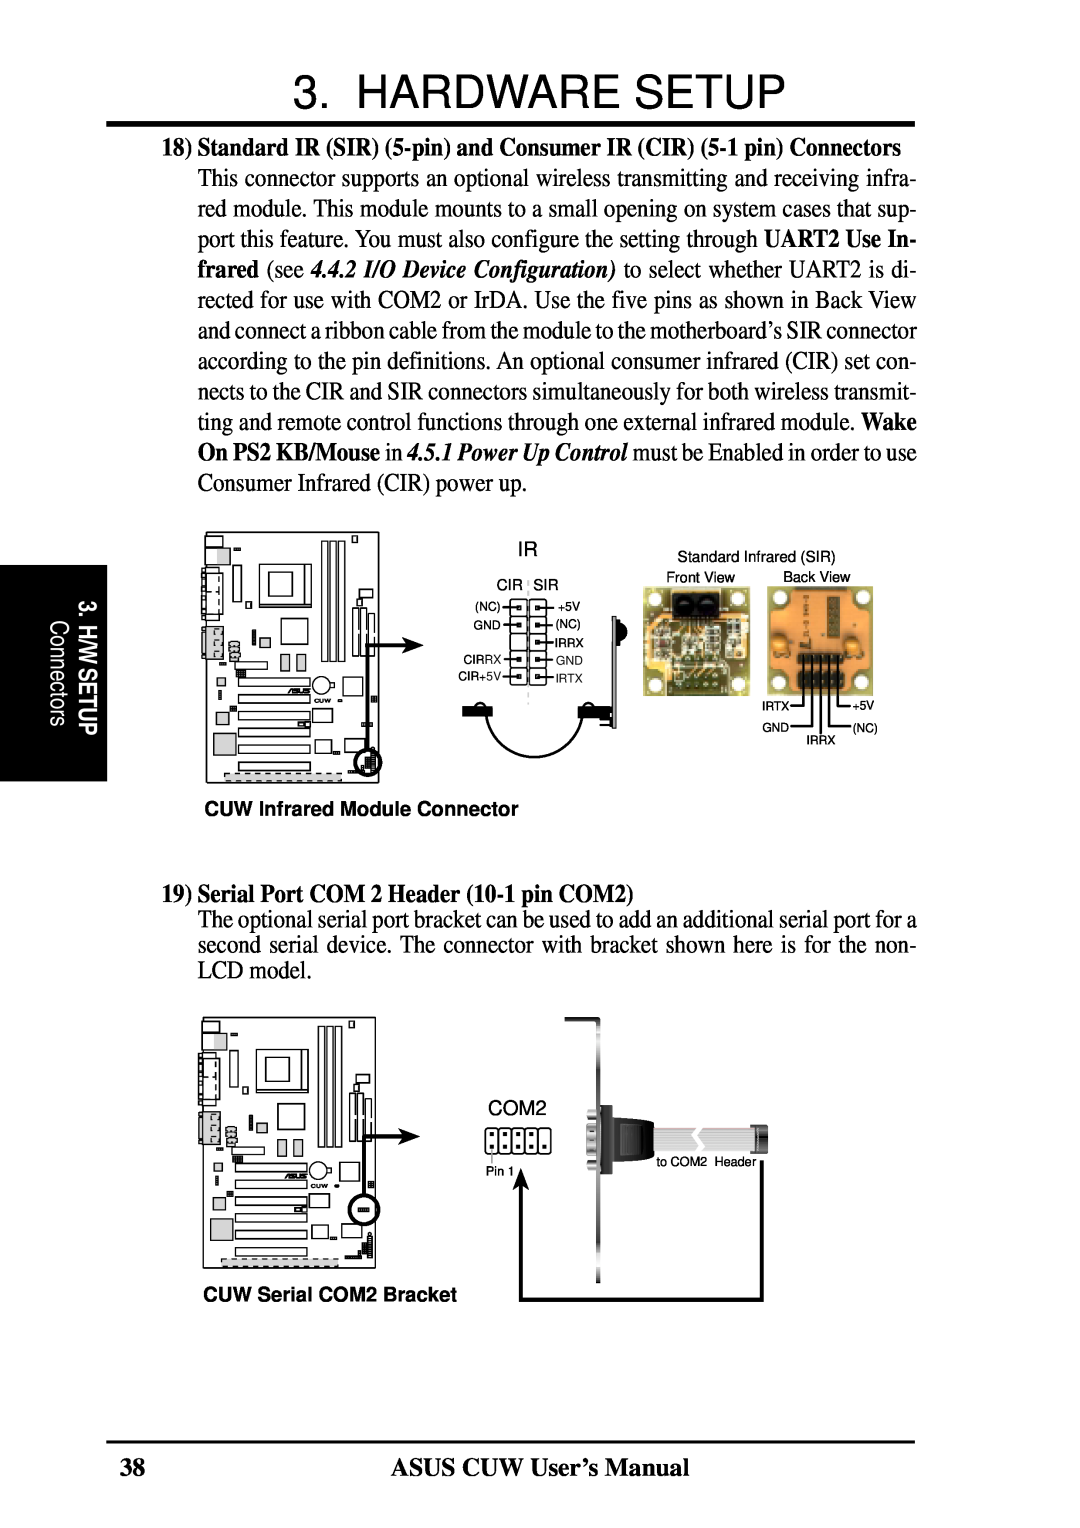 Asus 810 Serial Port COM 2 Header 10-1 pin COM2, Hardware Setup, ASUS CUW User’s Manual, CUW Infrared Module Connector 